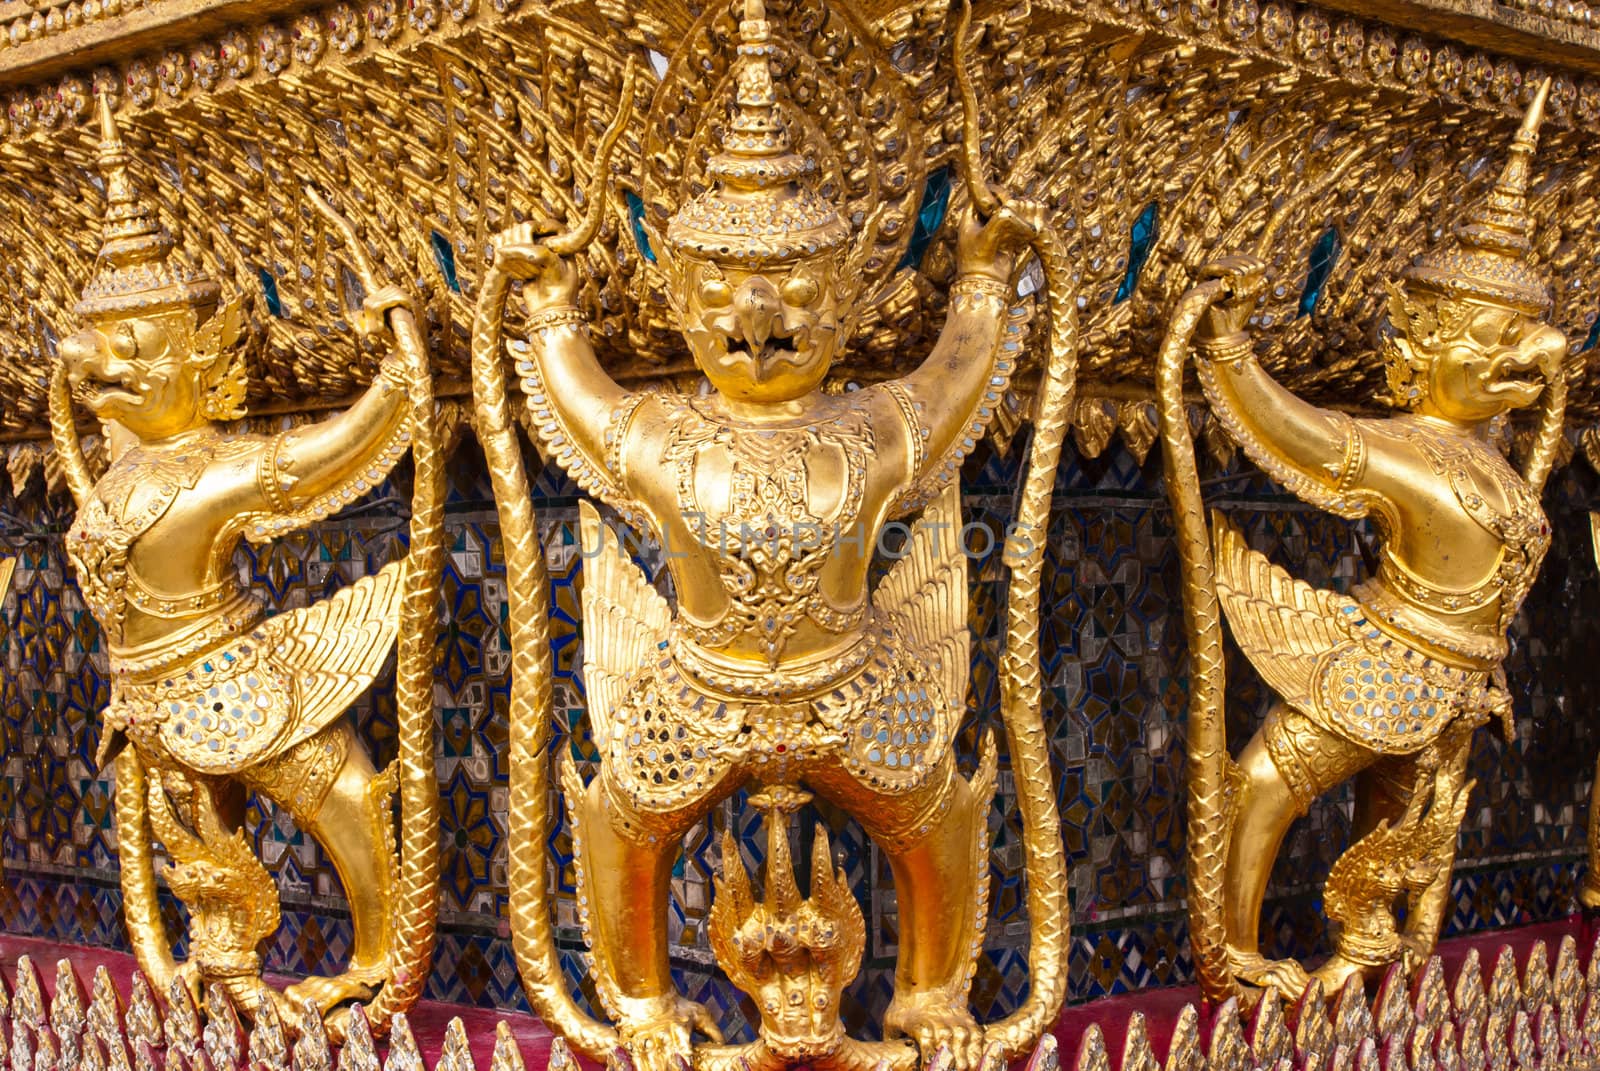 Garuda in Grand Palace Bangkok Thailand by sasilsolutions